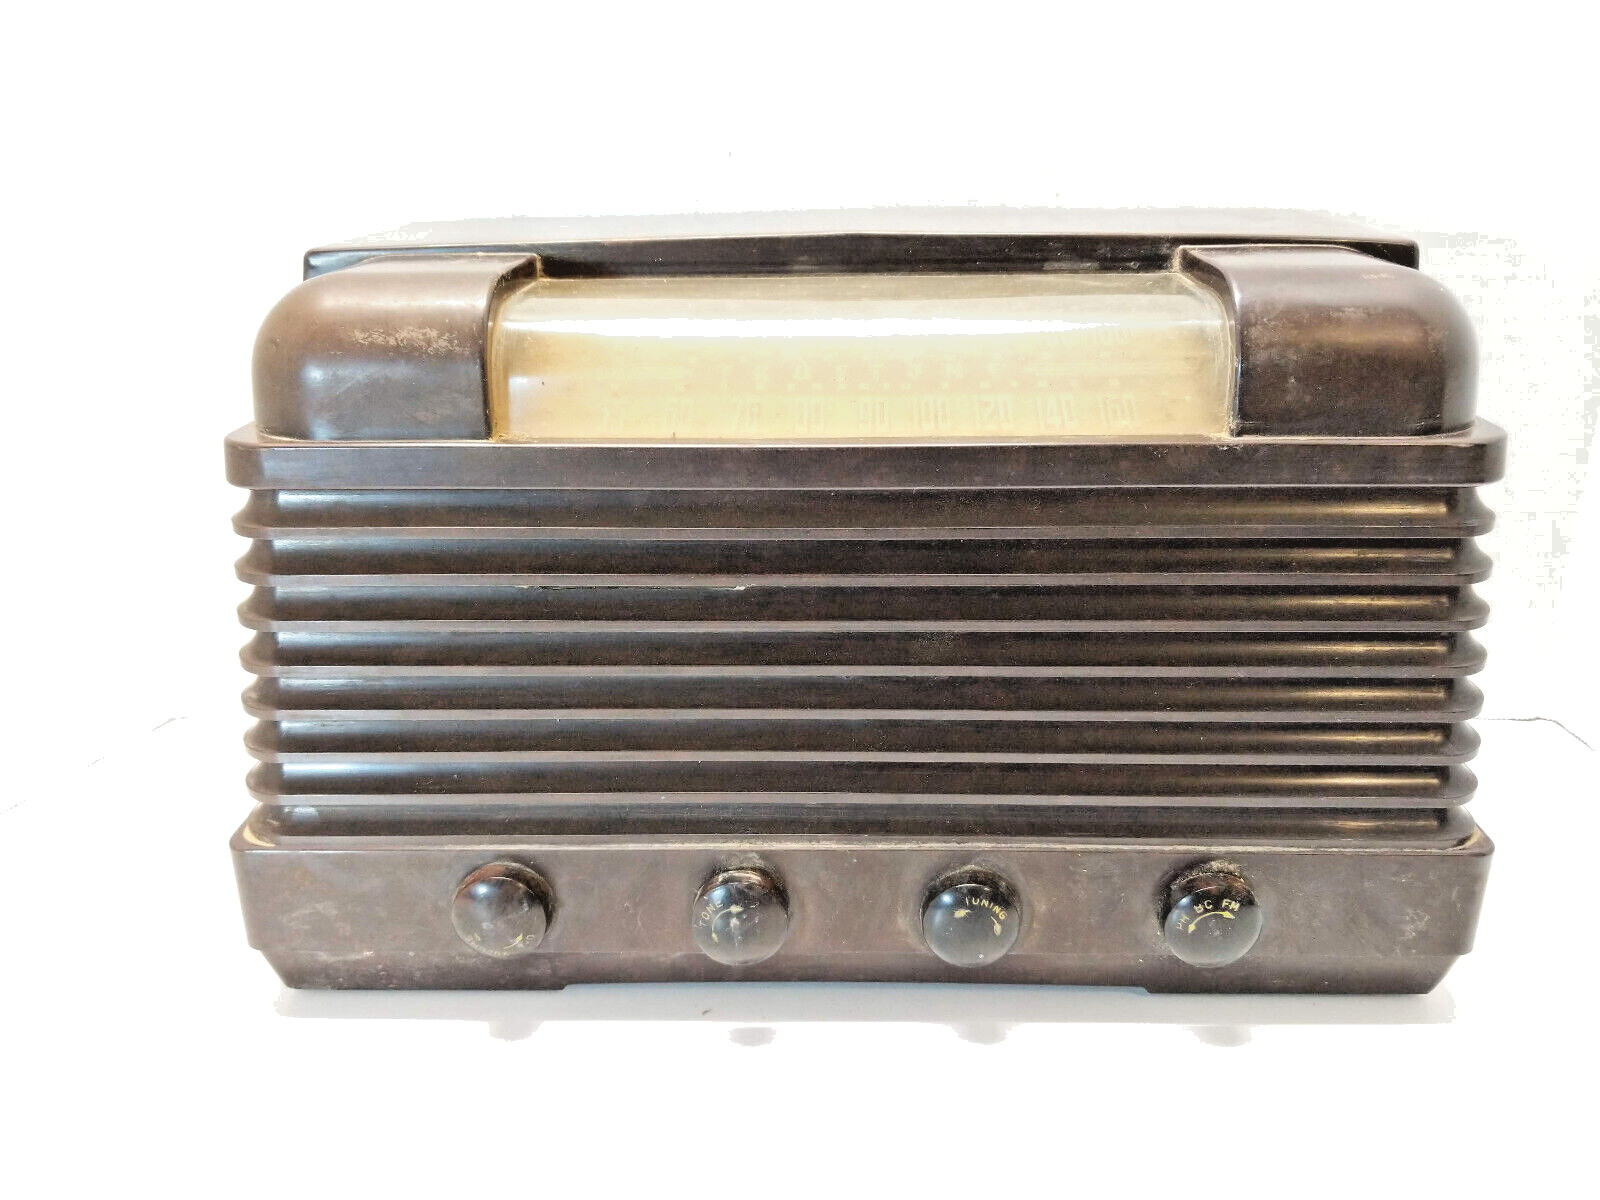 Vintage Truetone Model D-2819 Bakelite Tube Radio 1948 - Untested